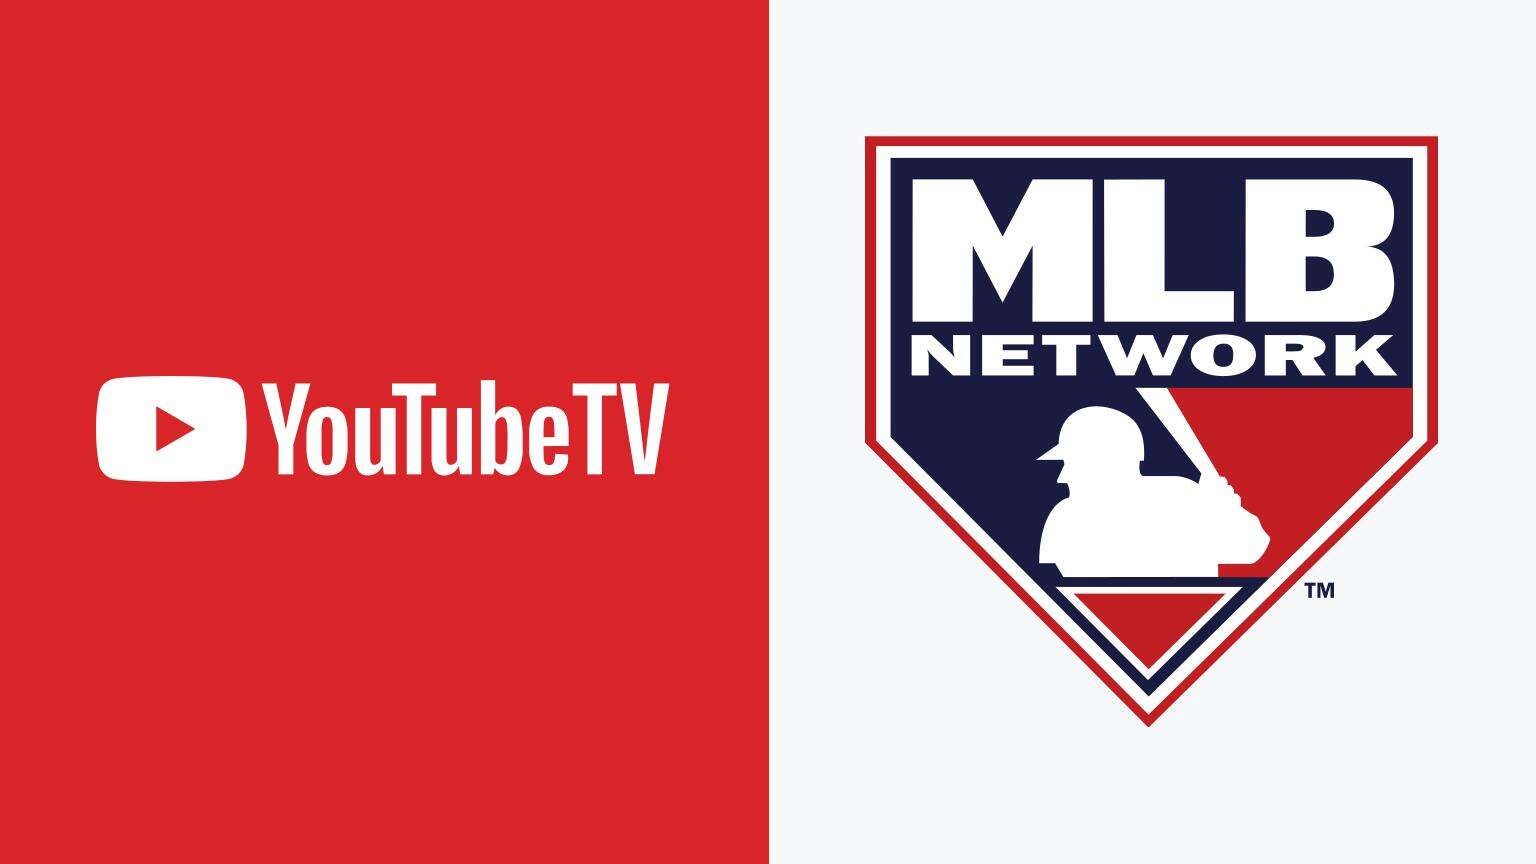 TV Drops MLB Network